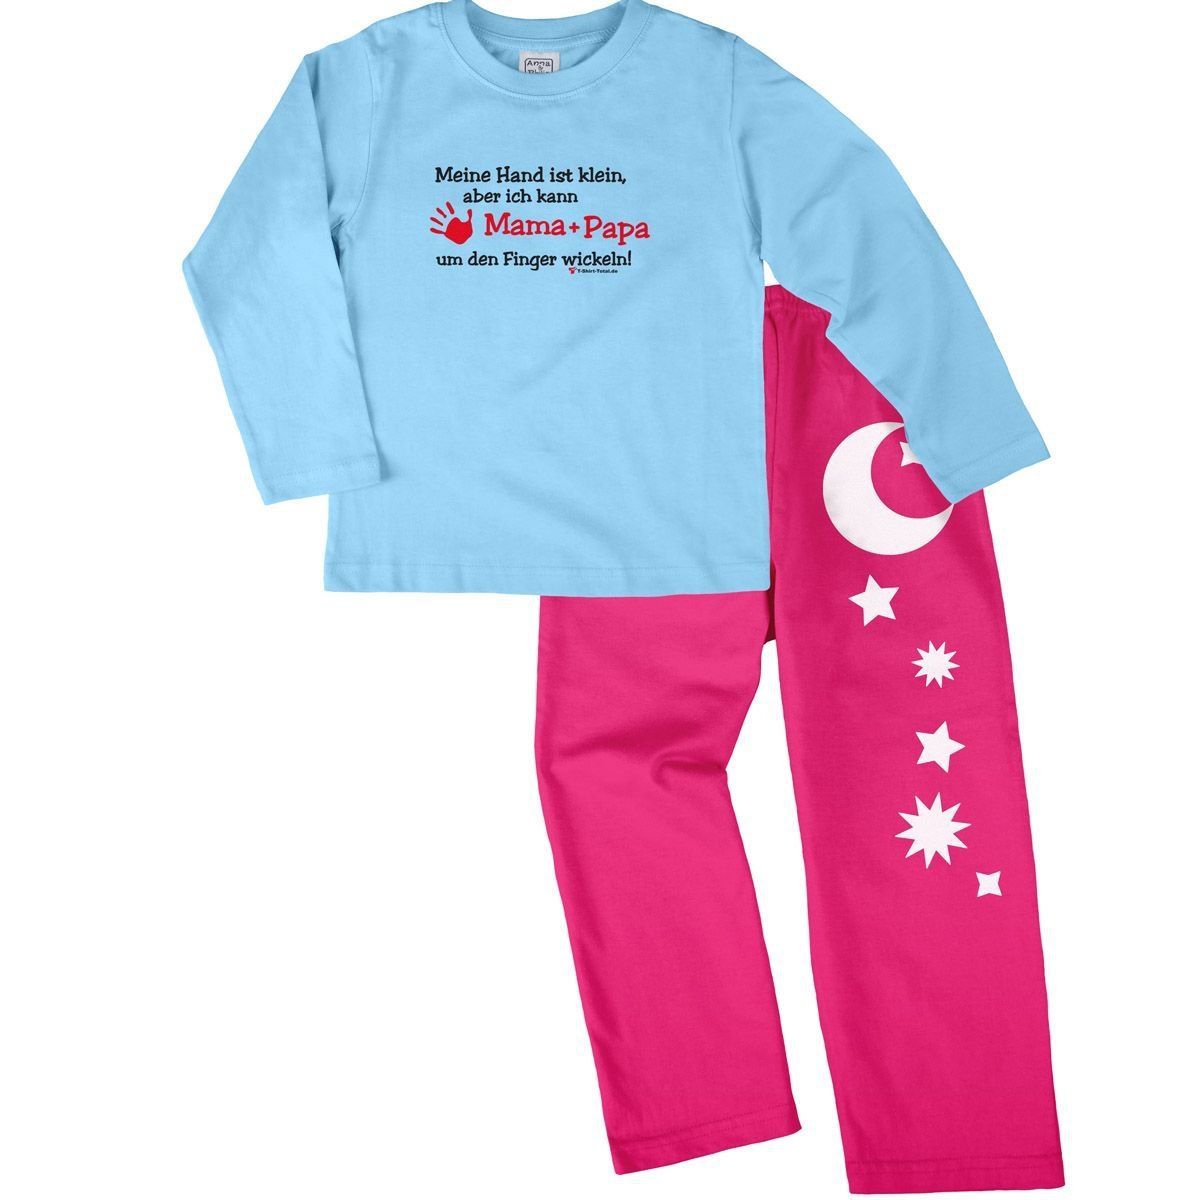 Kleine Hand Mama Papa Pyjama Set hellblau / pink 110 / 116